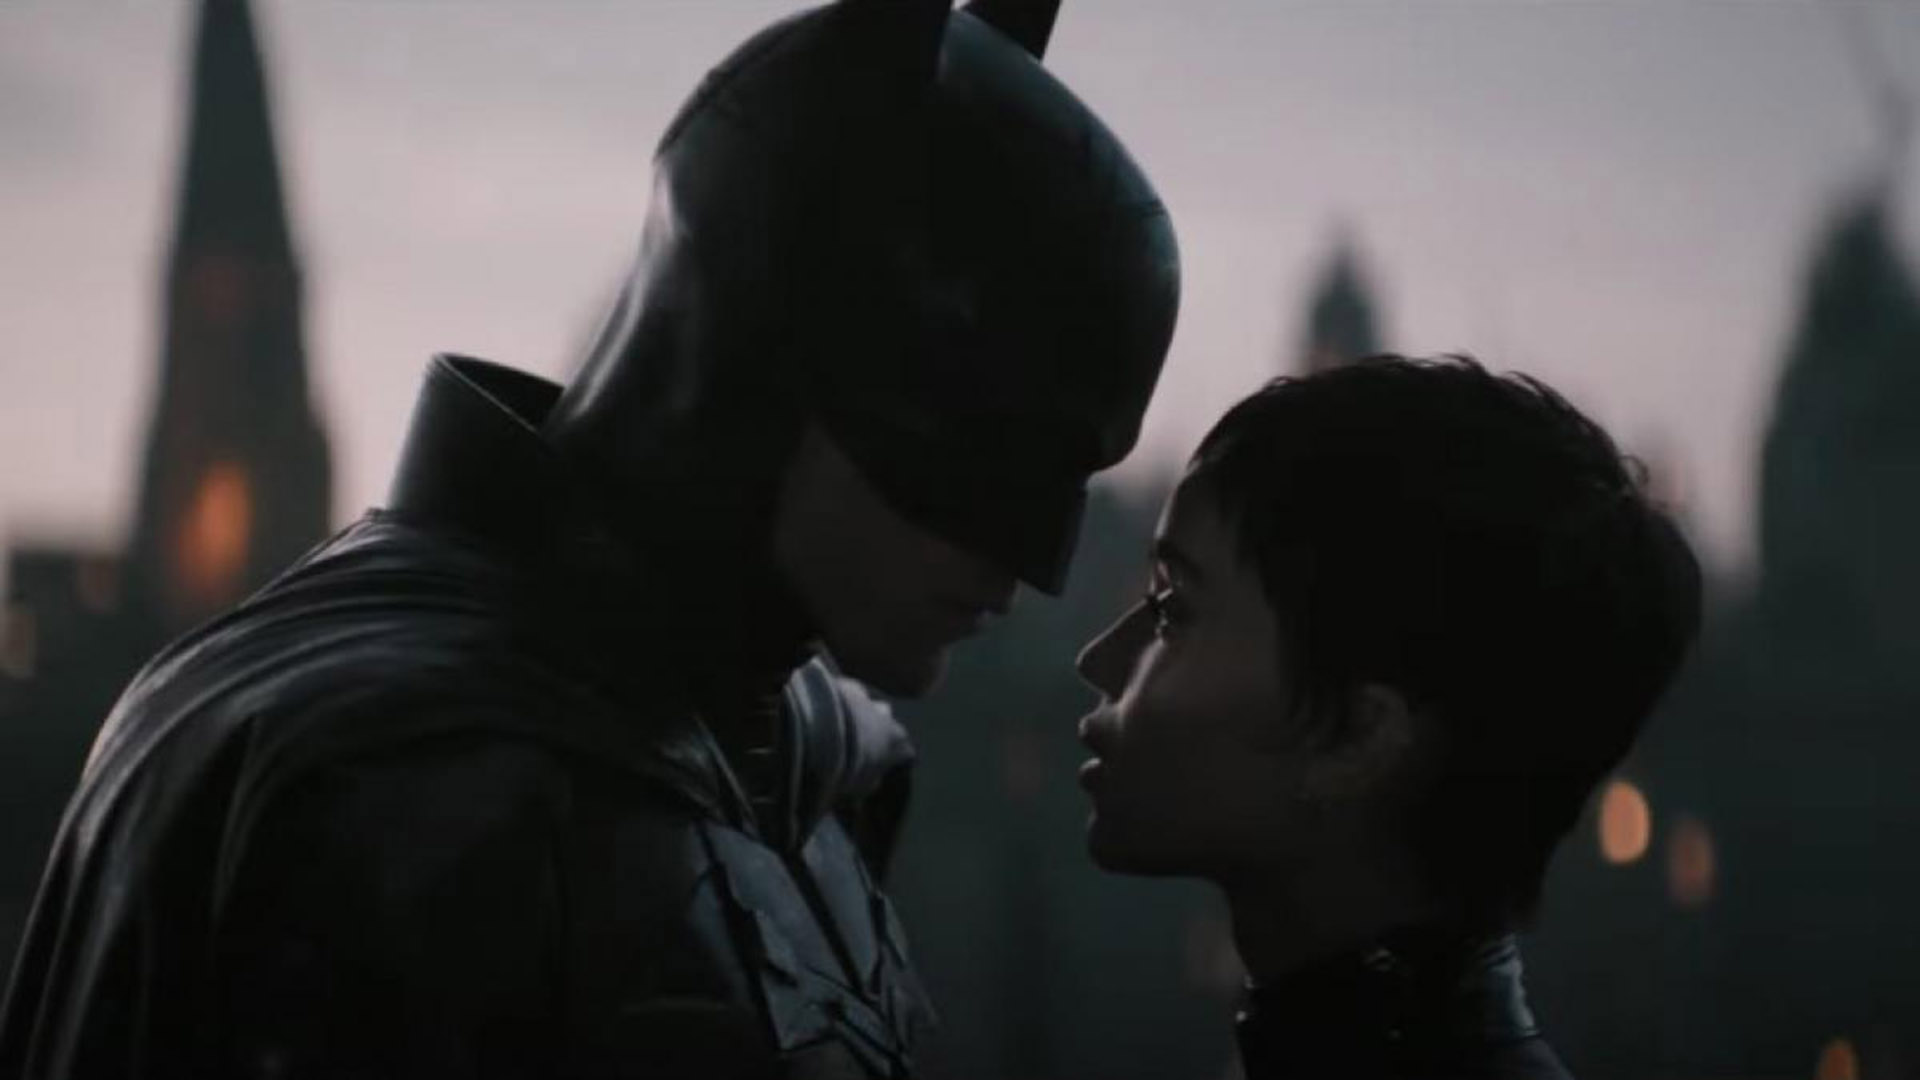 Nuevo adelanto de “The Batman” con más escenas entre Robert Pattinson y Zoë  Kravitz y una novedad respecto al estreno - Infobae